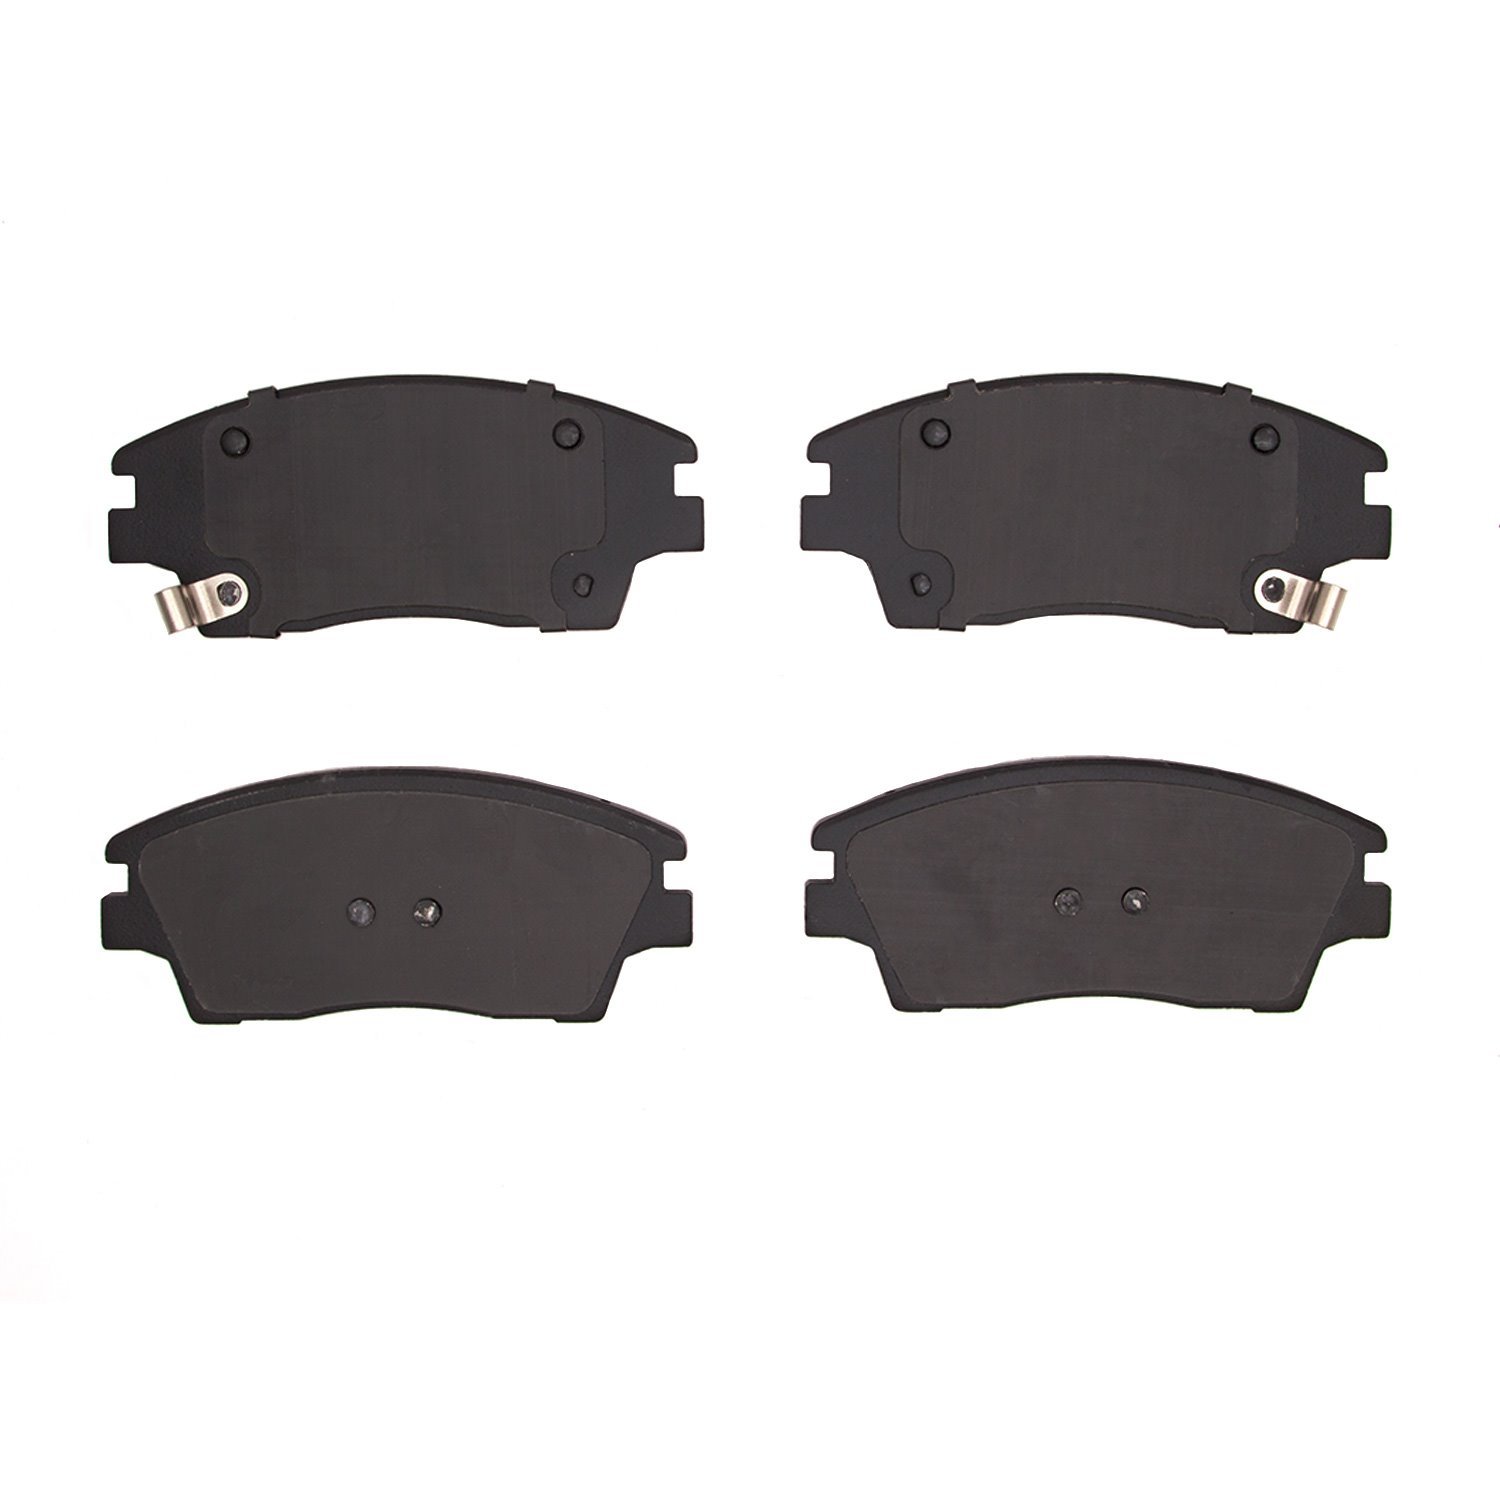 1310-1847-00 3000-Series Ceramic Brake Pads, Fits Select Kia/Hyundai/Genesis, Position: Front